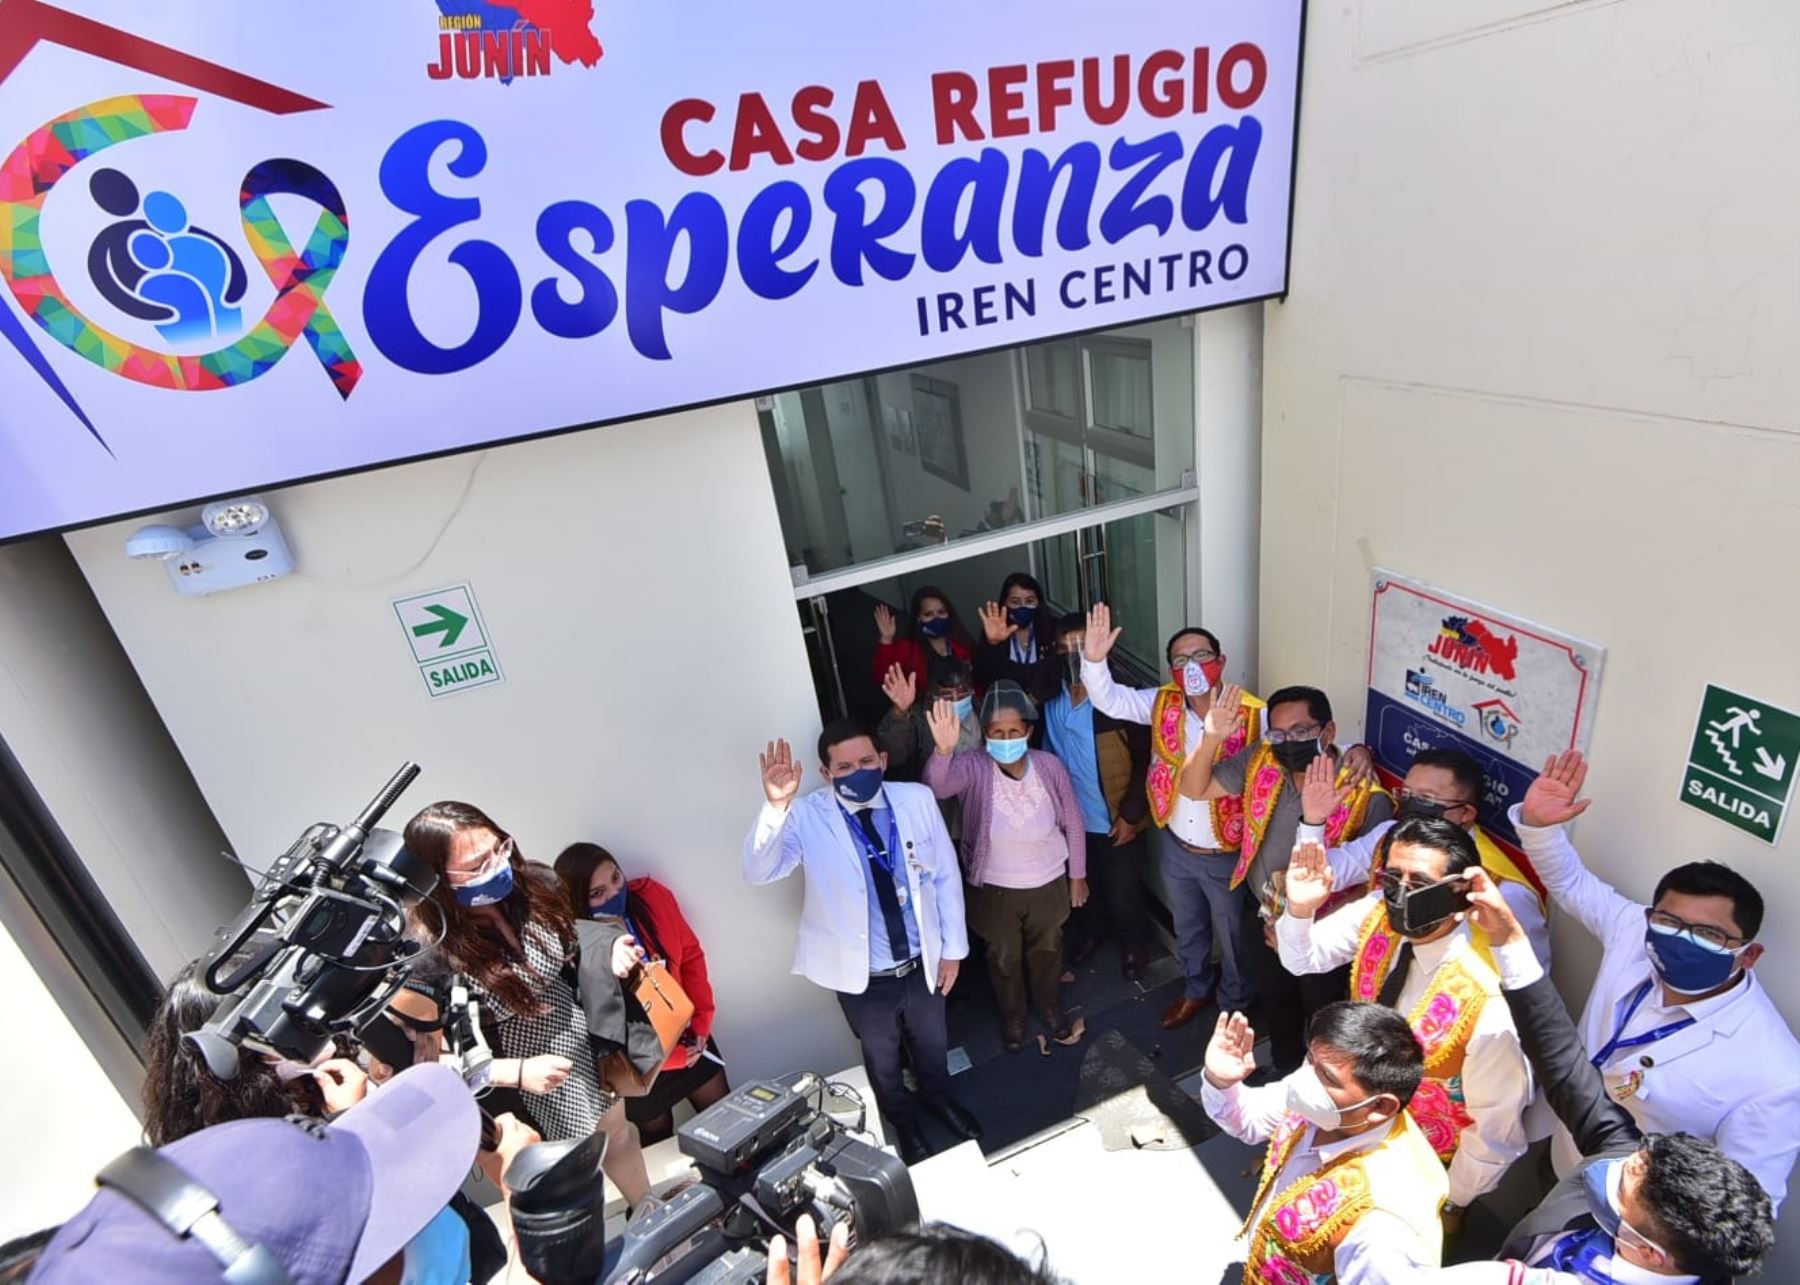 Junín implementa casa refugio para albergar a los familiares de pacientes con cáncer internados en el IREN Centro, ubicado en la ciudad de Concepción.